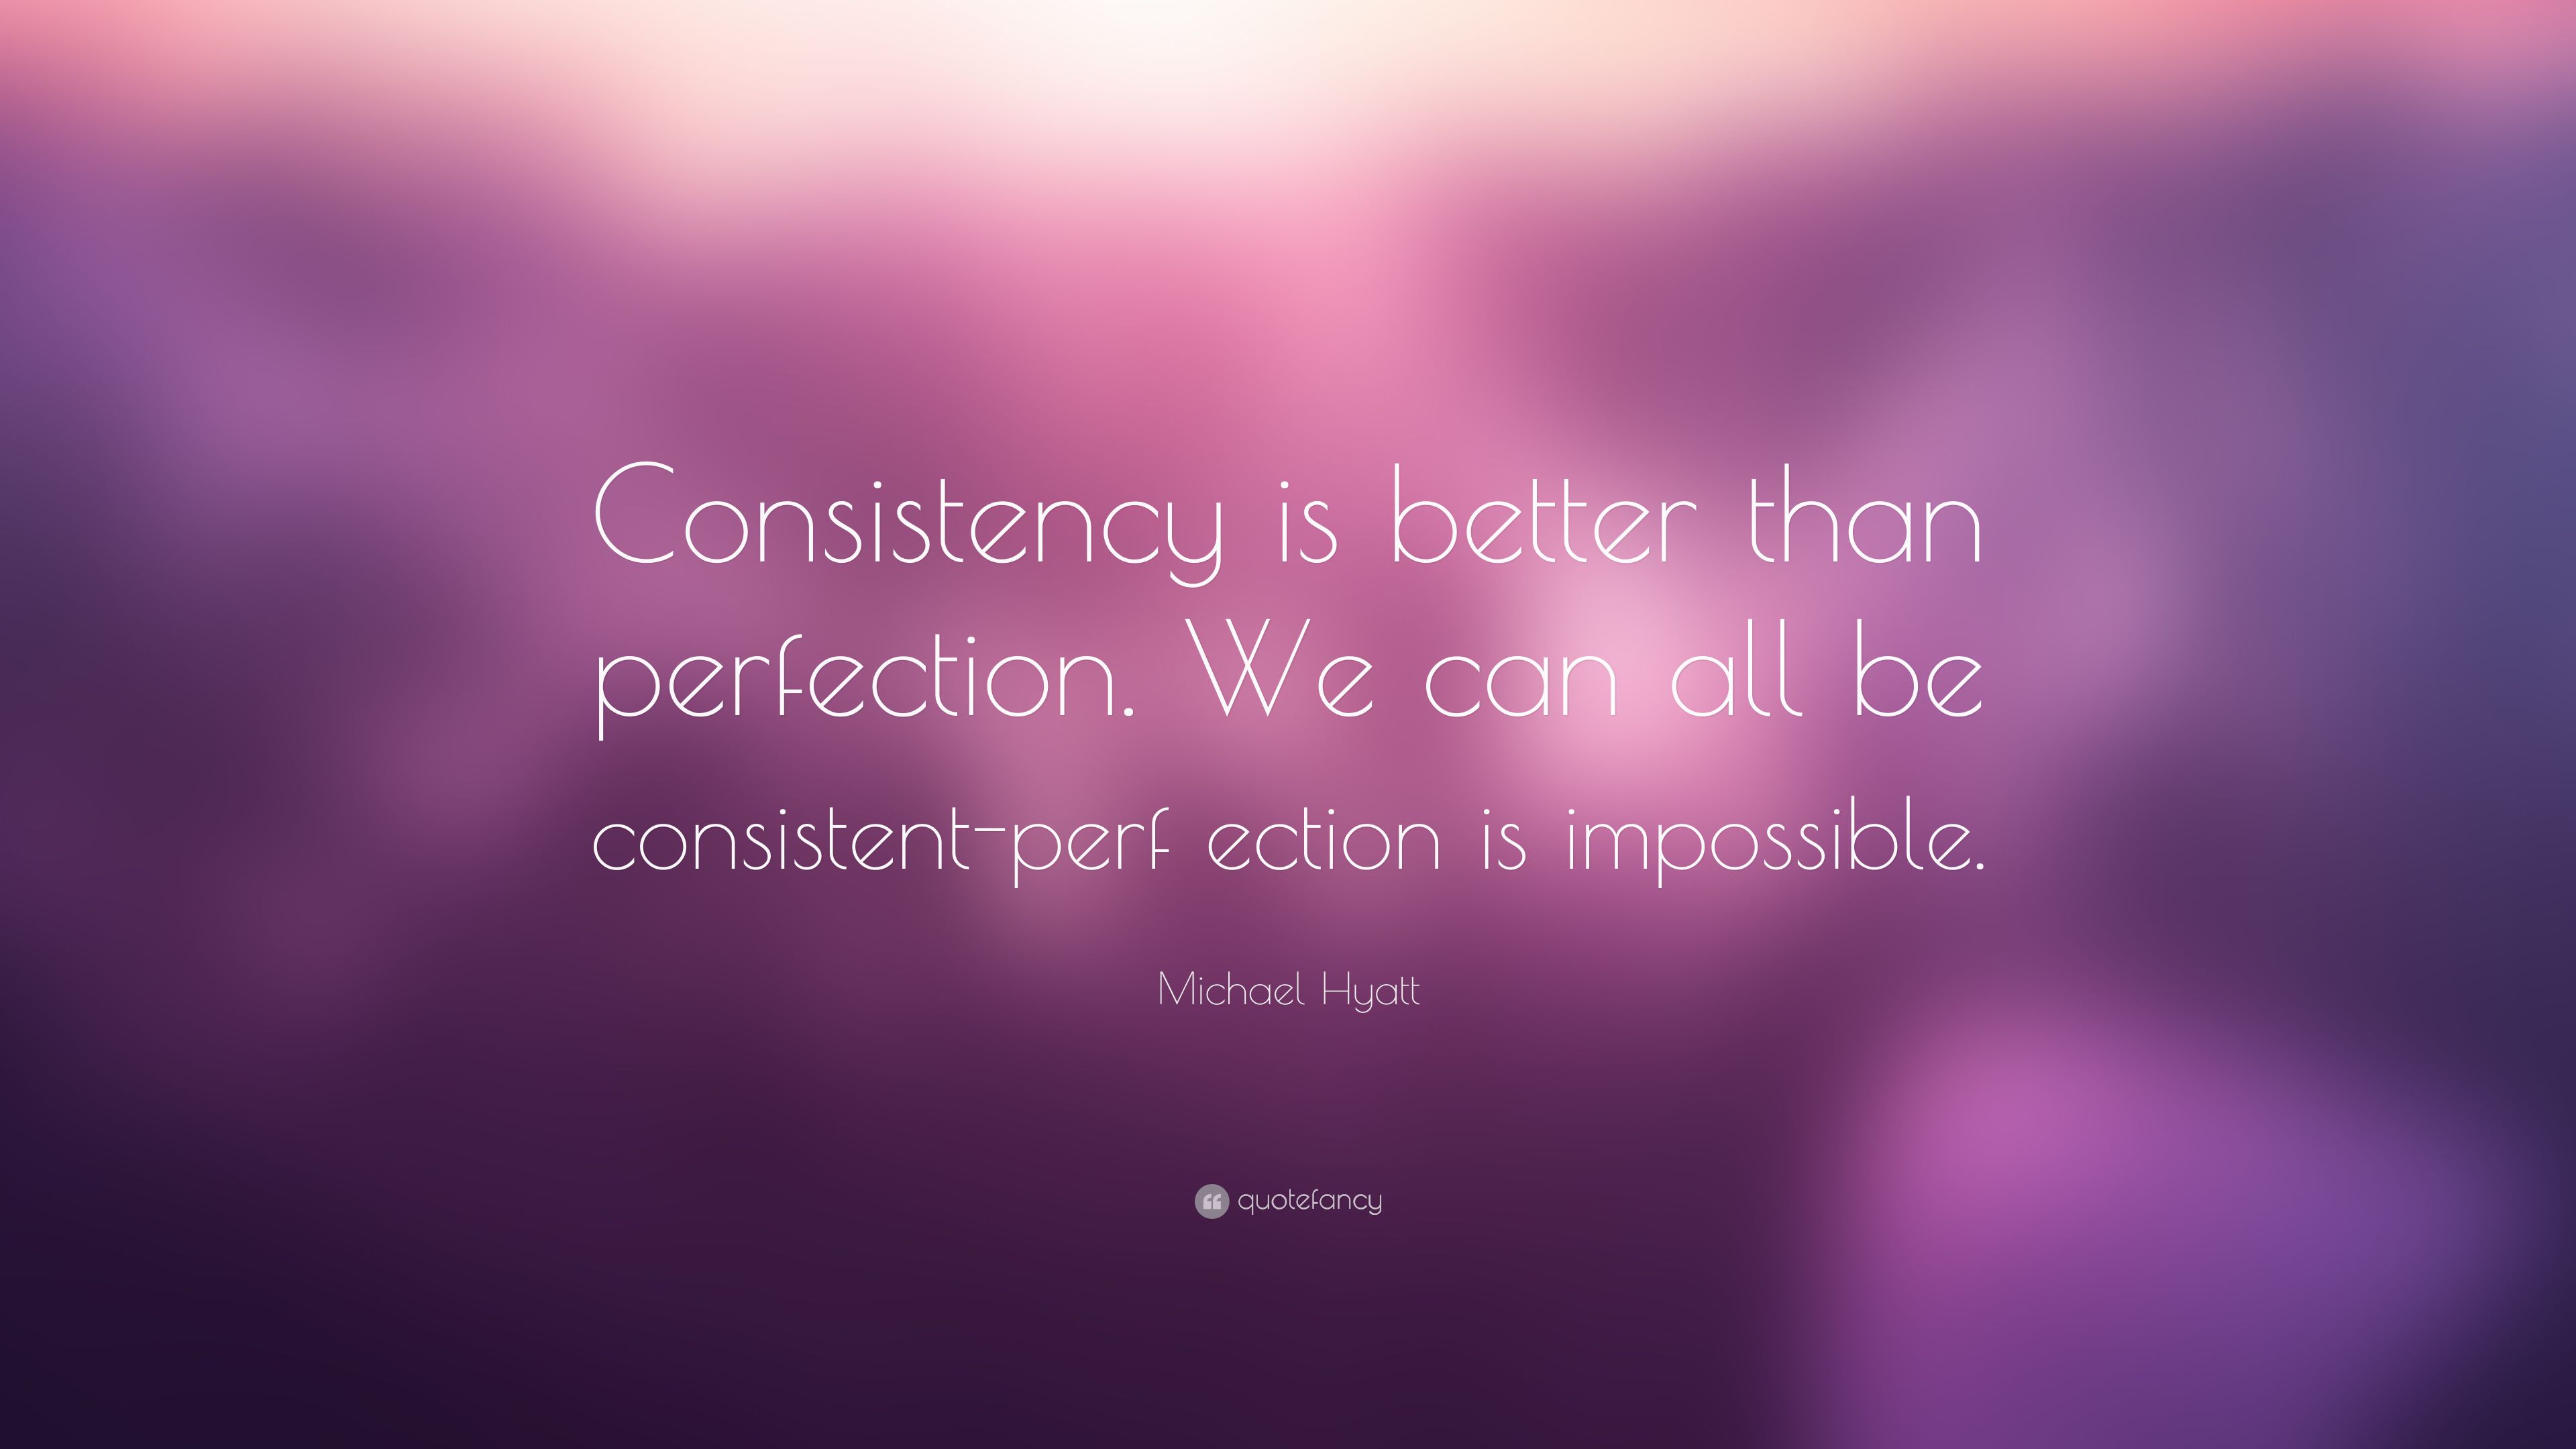 Michael Hyatt Quote: “Consistency is .quotefancy.com